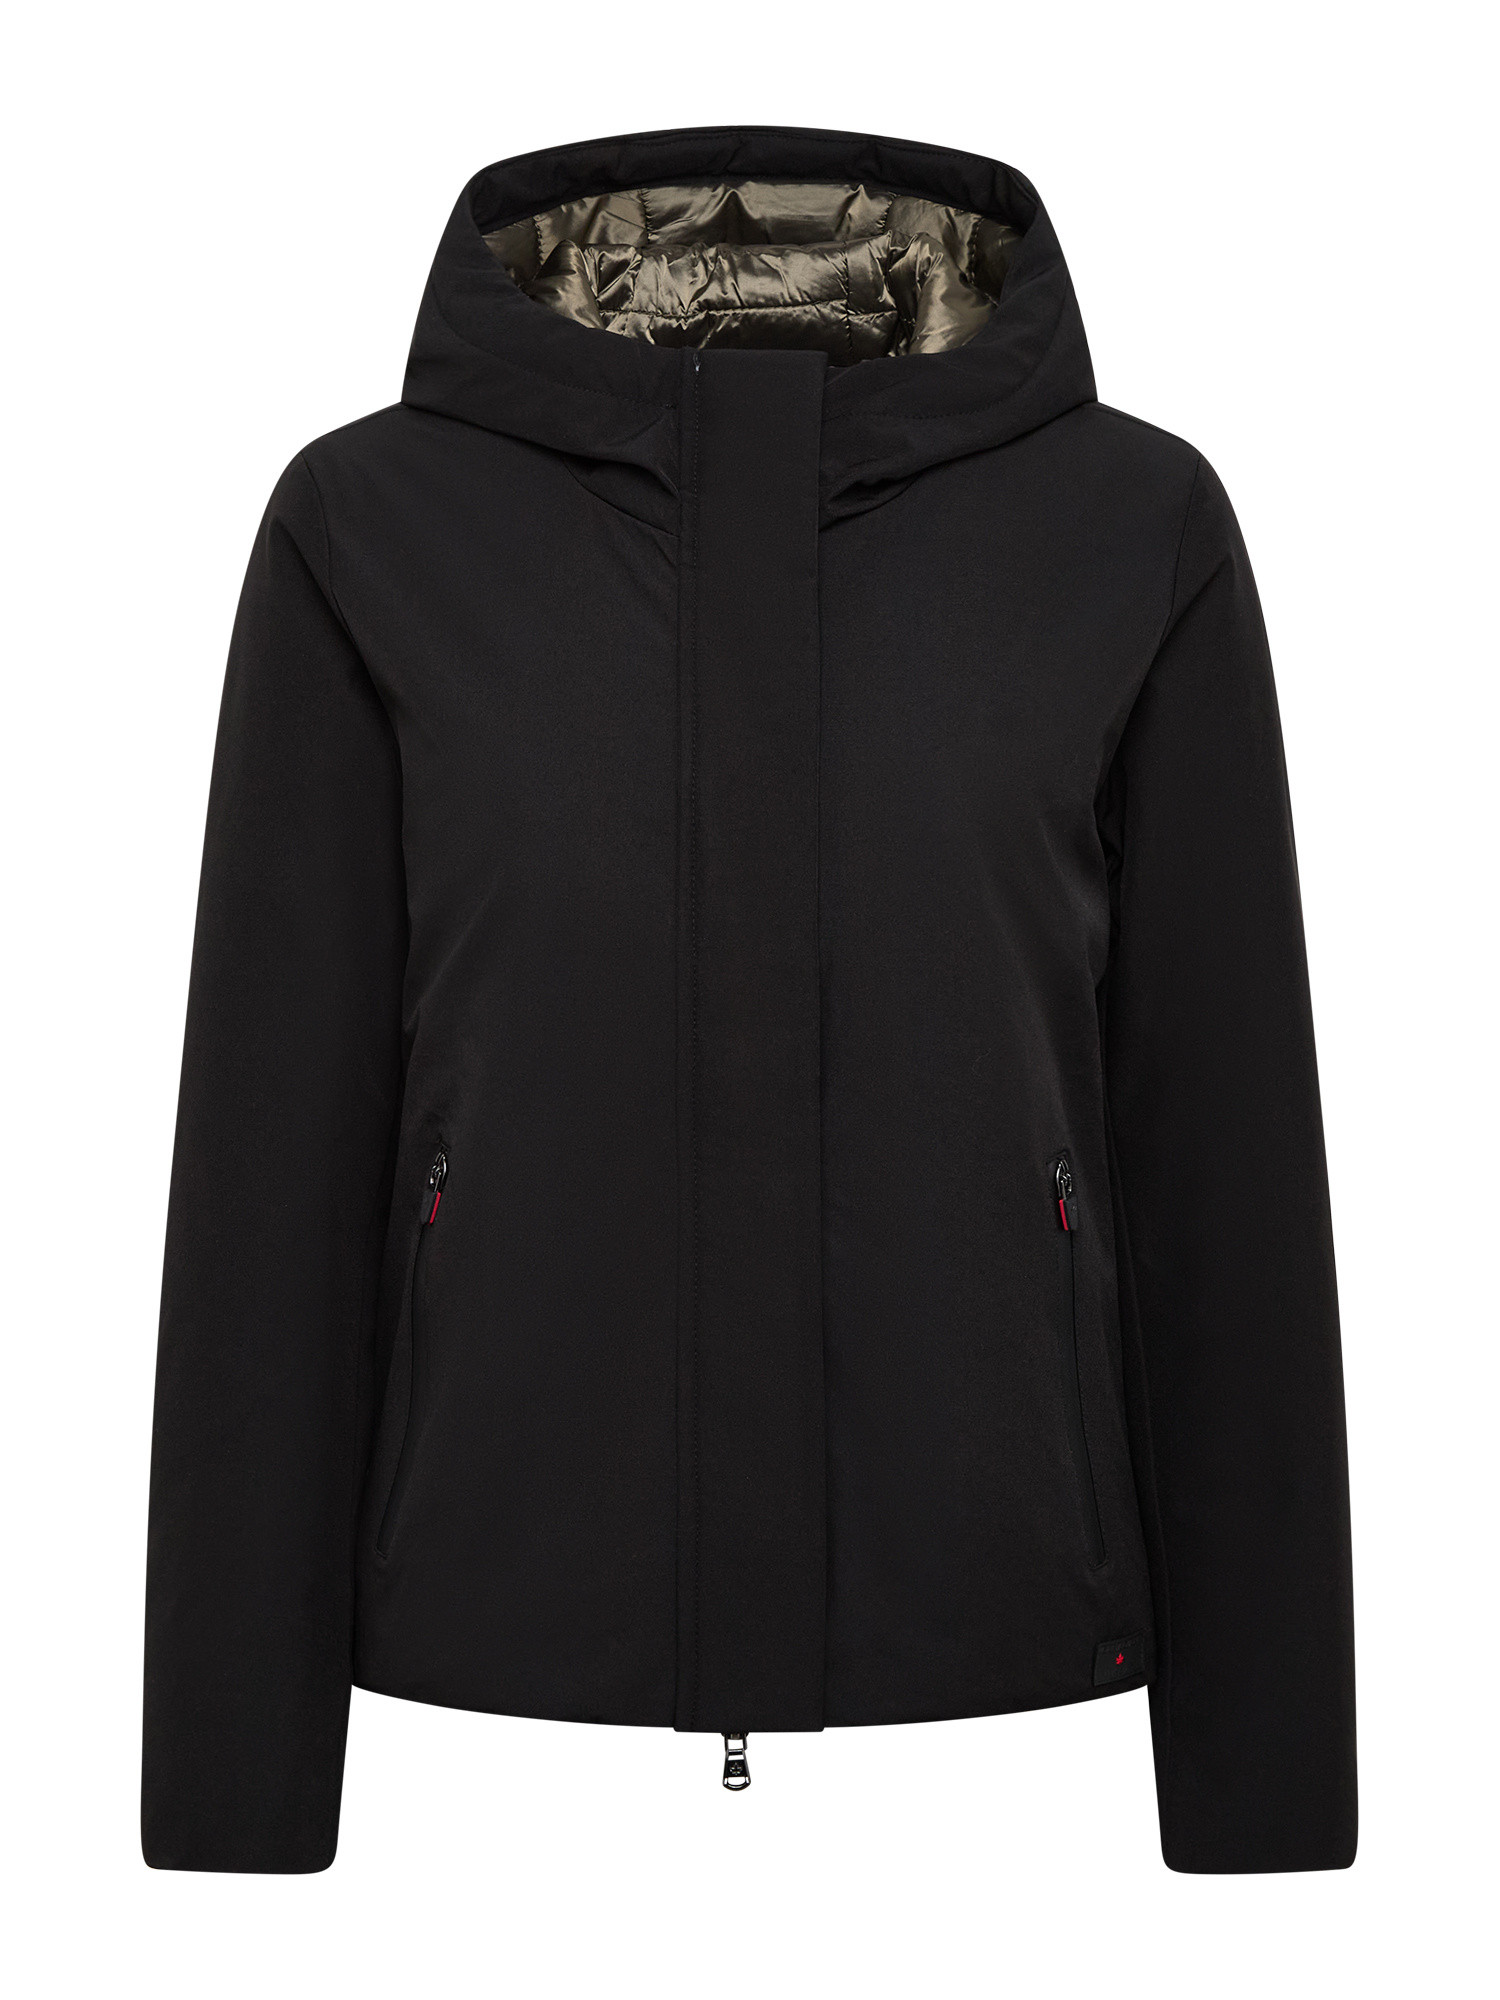 Canadian - Soft zip Jacket, Nero, large image number 0